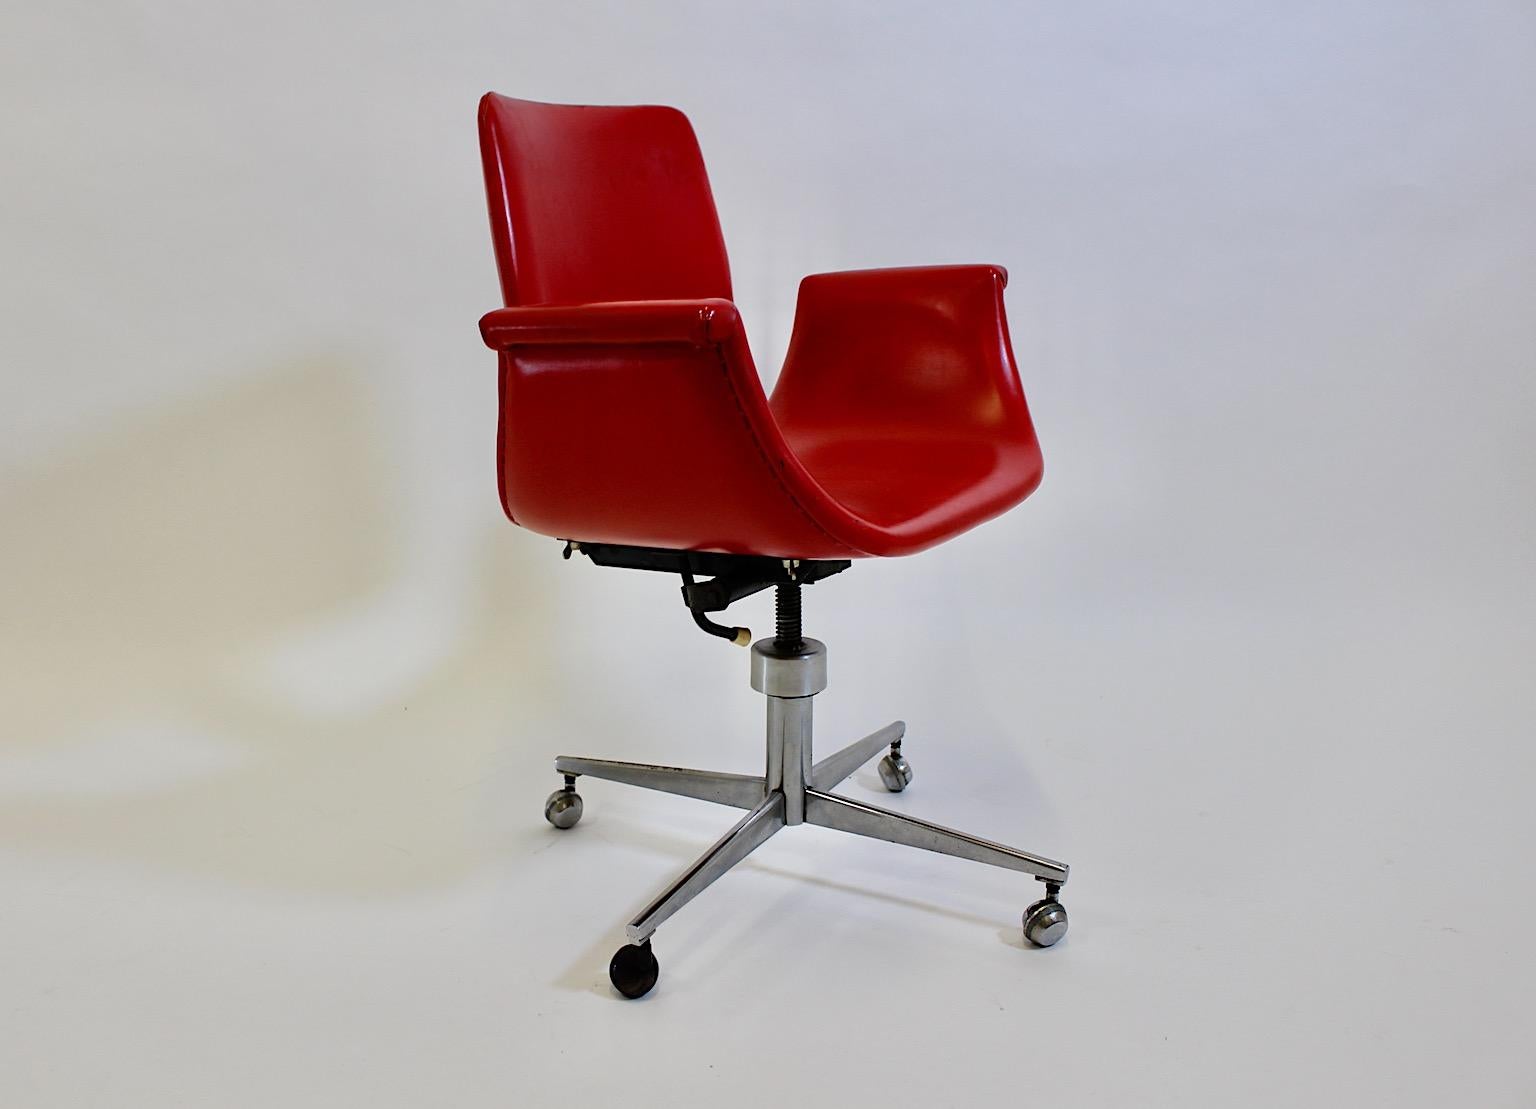 Chaise de bureau vintage Space AGE en faux cuir rouge et chrome en forme de tulipe des années 1960.
Une fabuleuse chaise de bureau vintage avec une coque d'assise rouge incurvée en forme de tulipe emblématique recouverte de faux cuir rouge, tandis